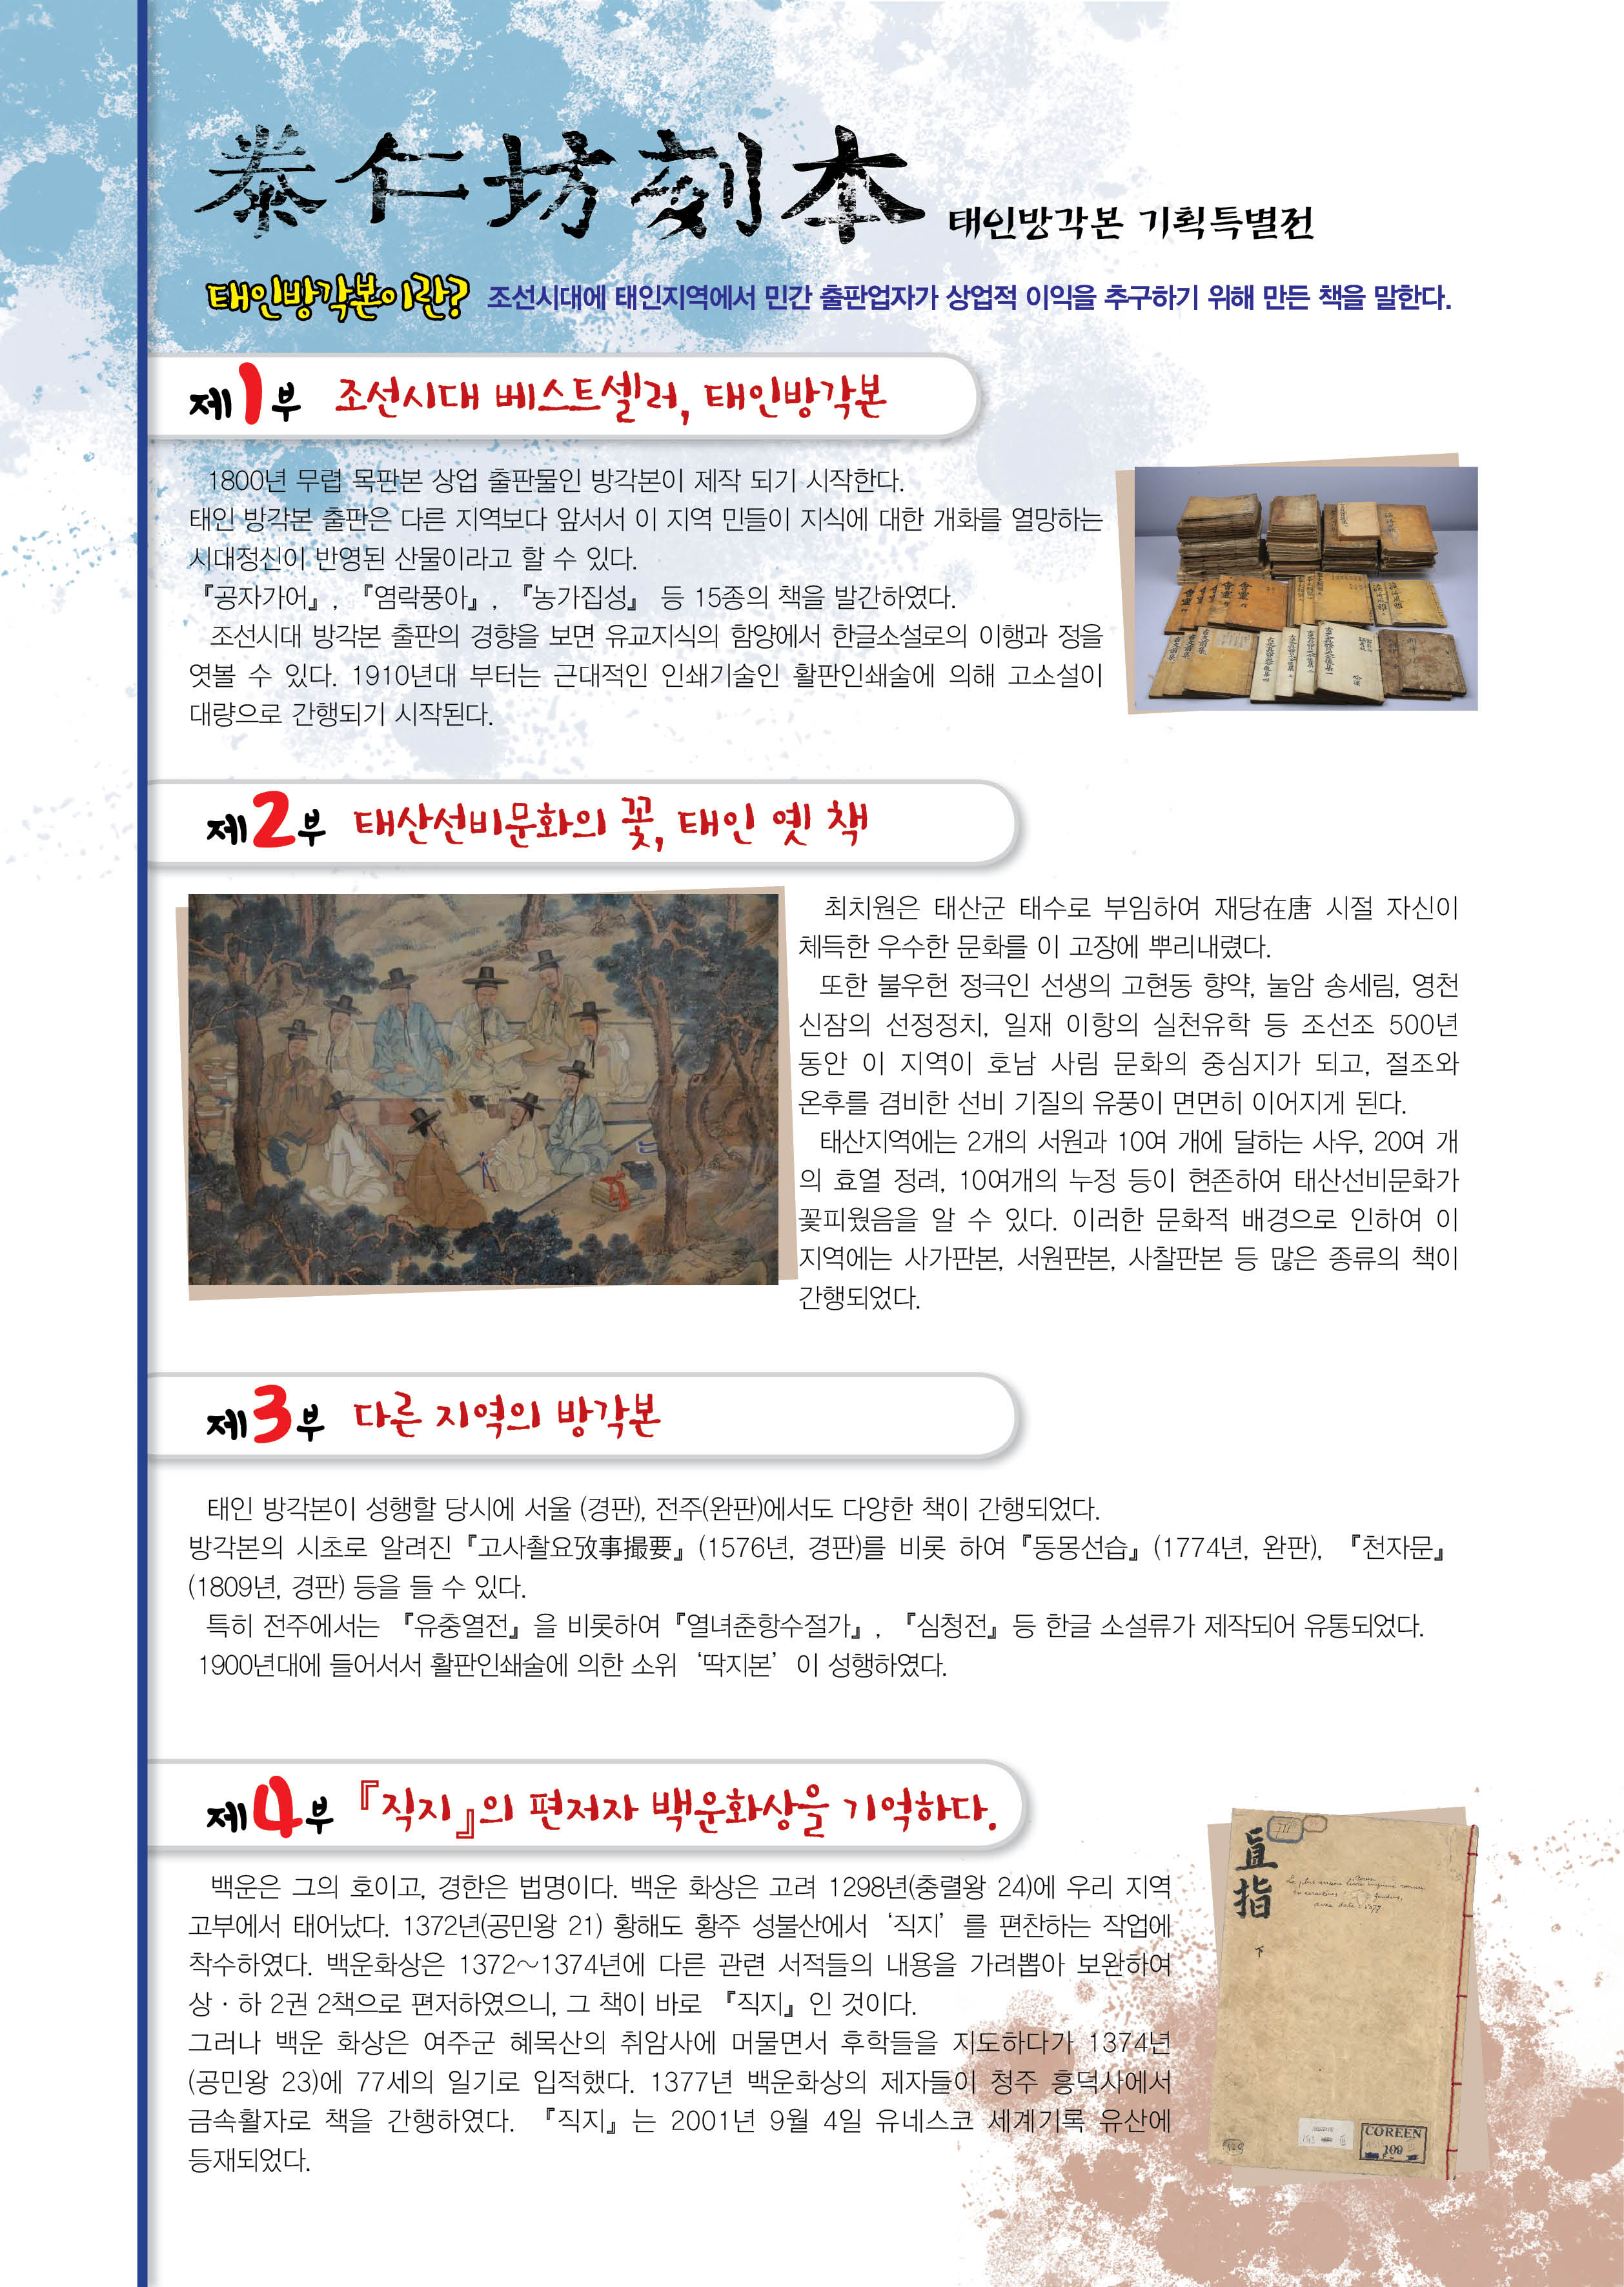 조선 출판인쇄문화의 판도라, 태인 방각본 기획특별전 개최 알림